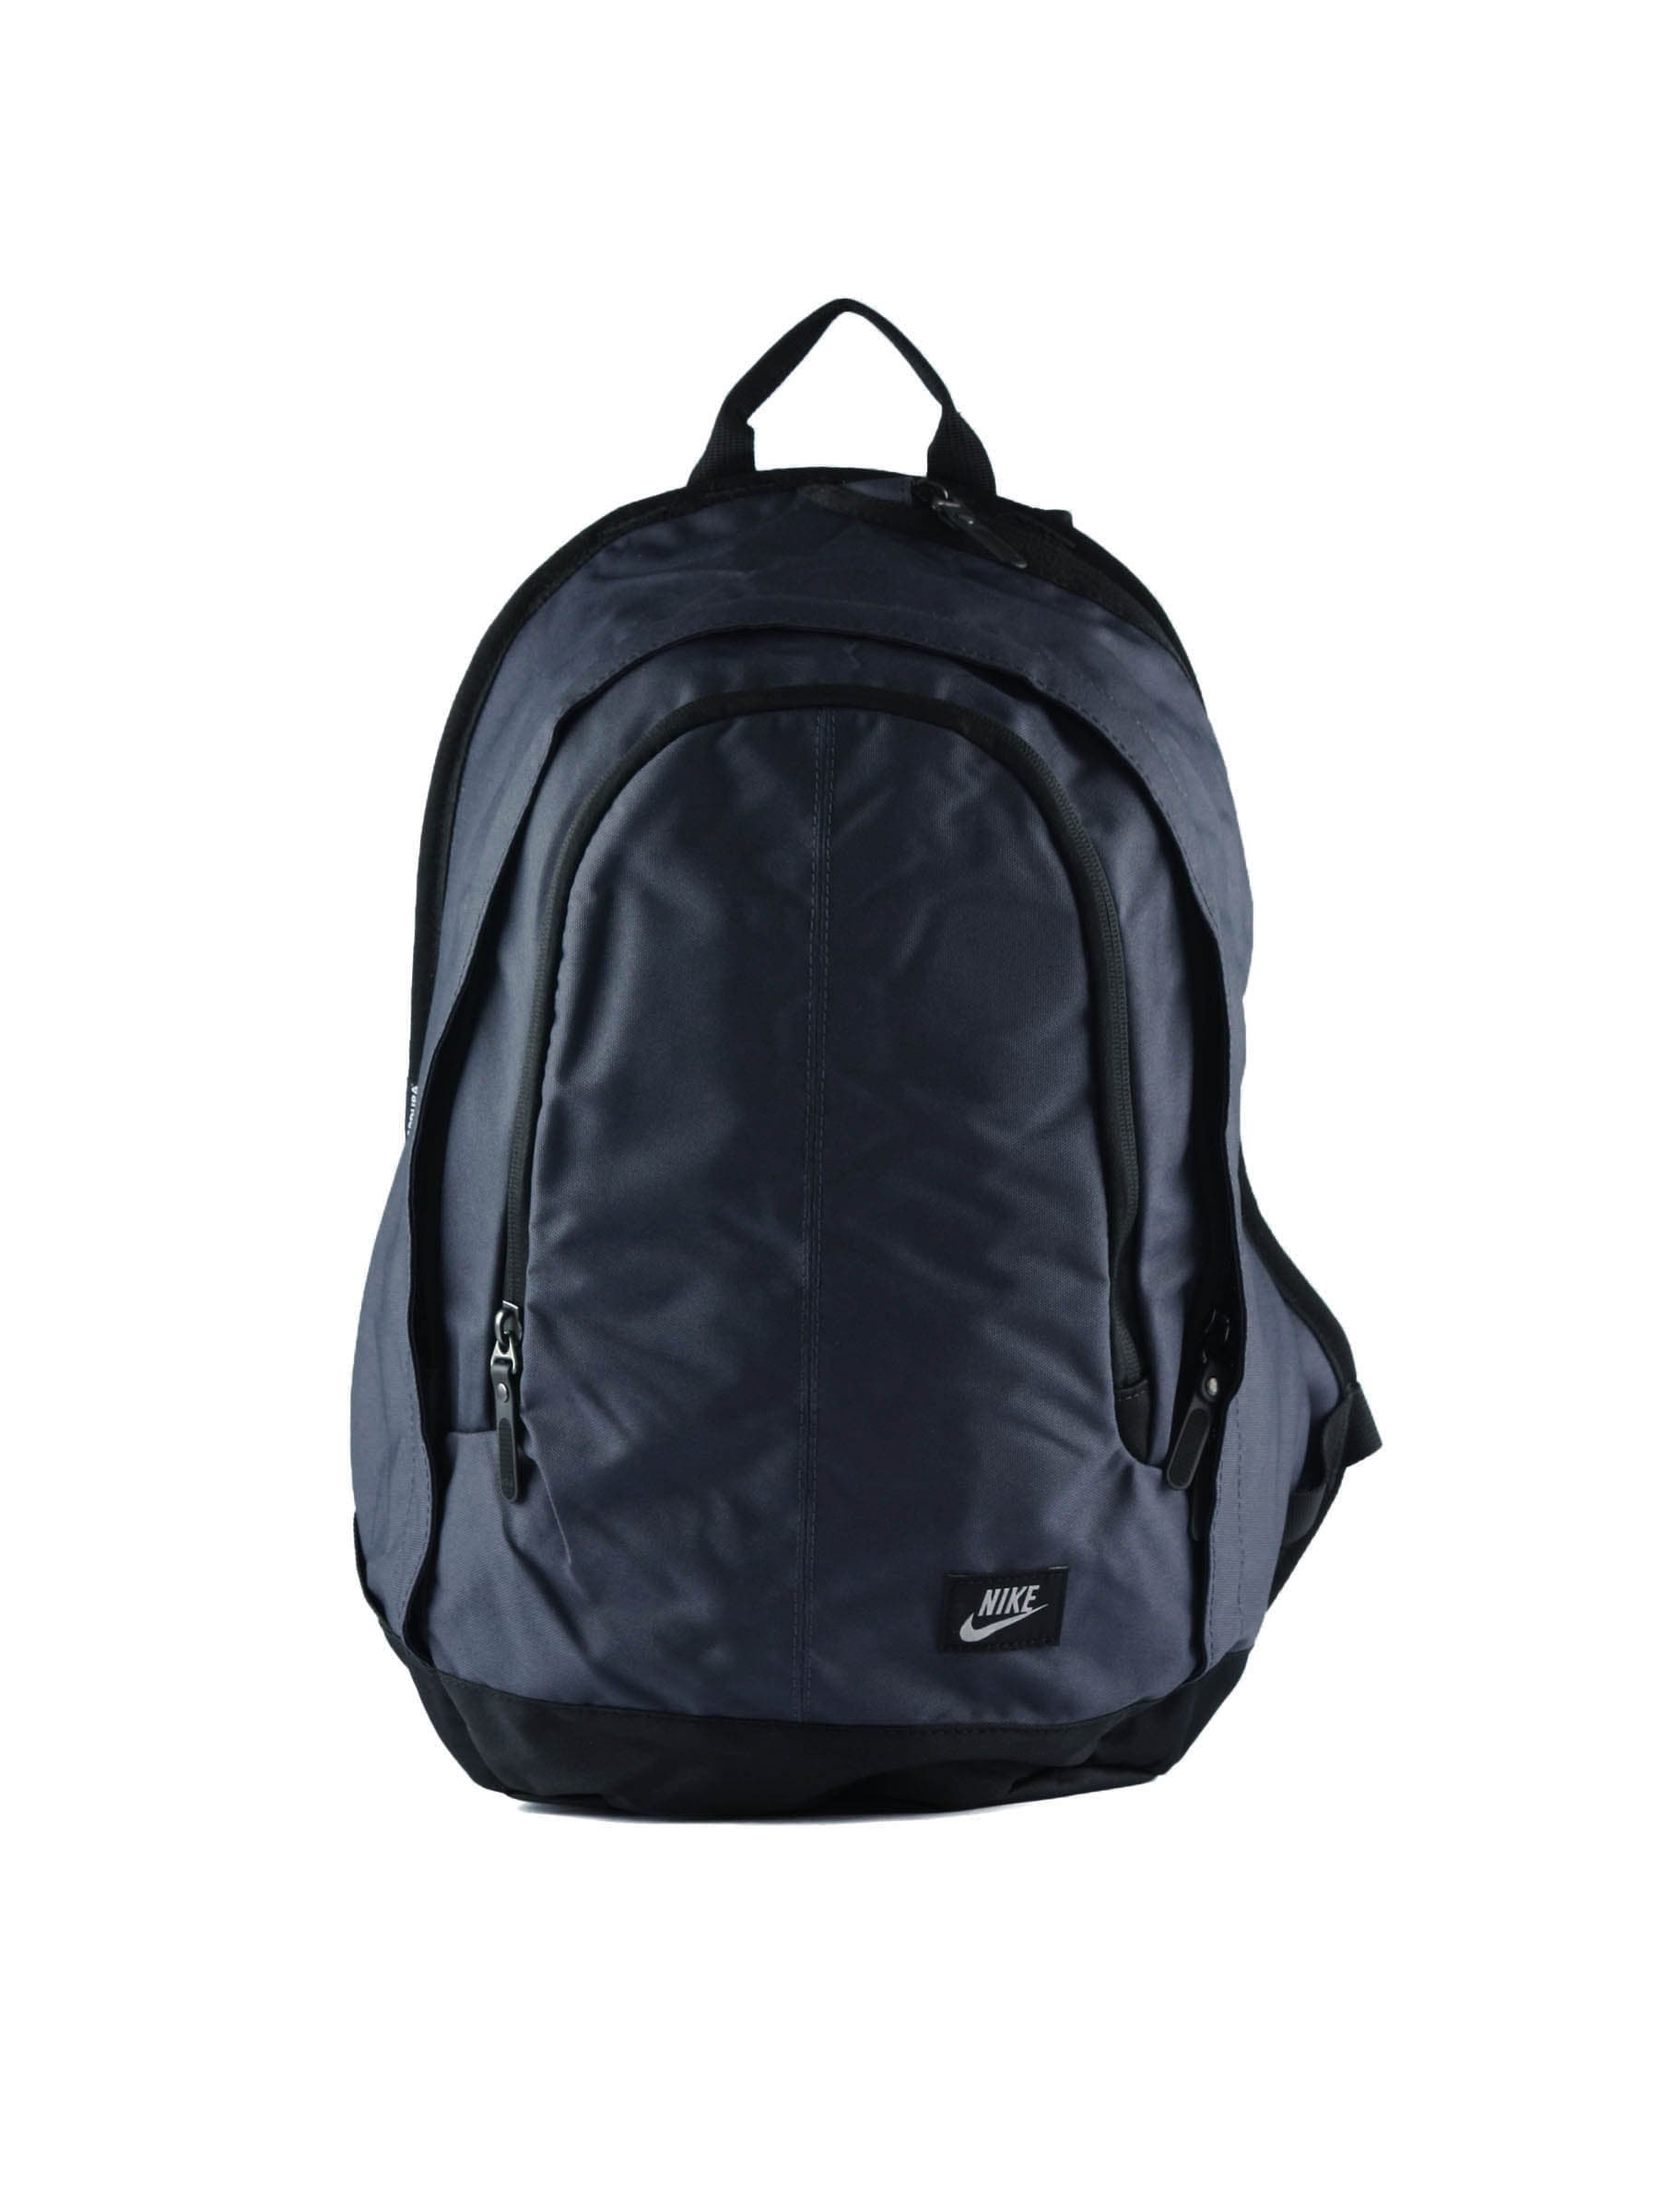 Nike Unisex Hayward 25M Grey Backpack